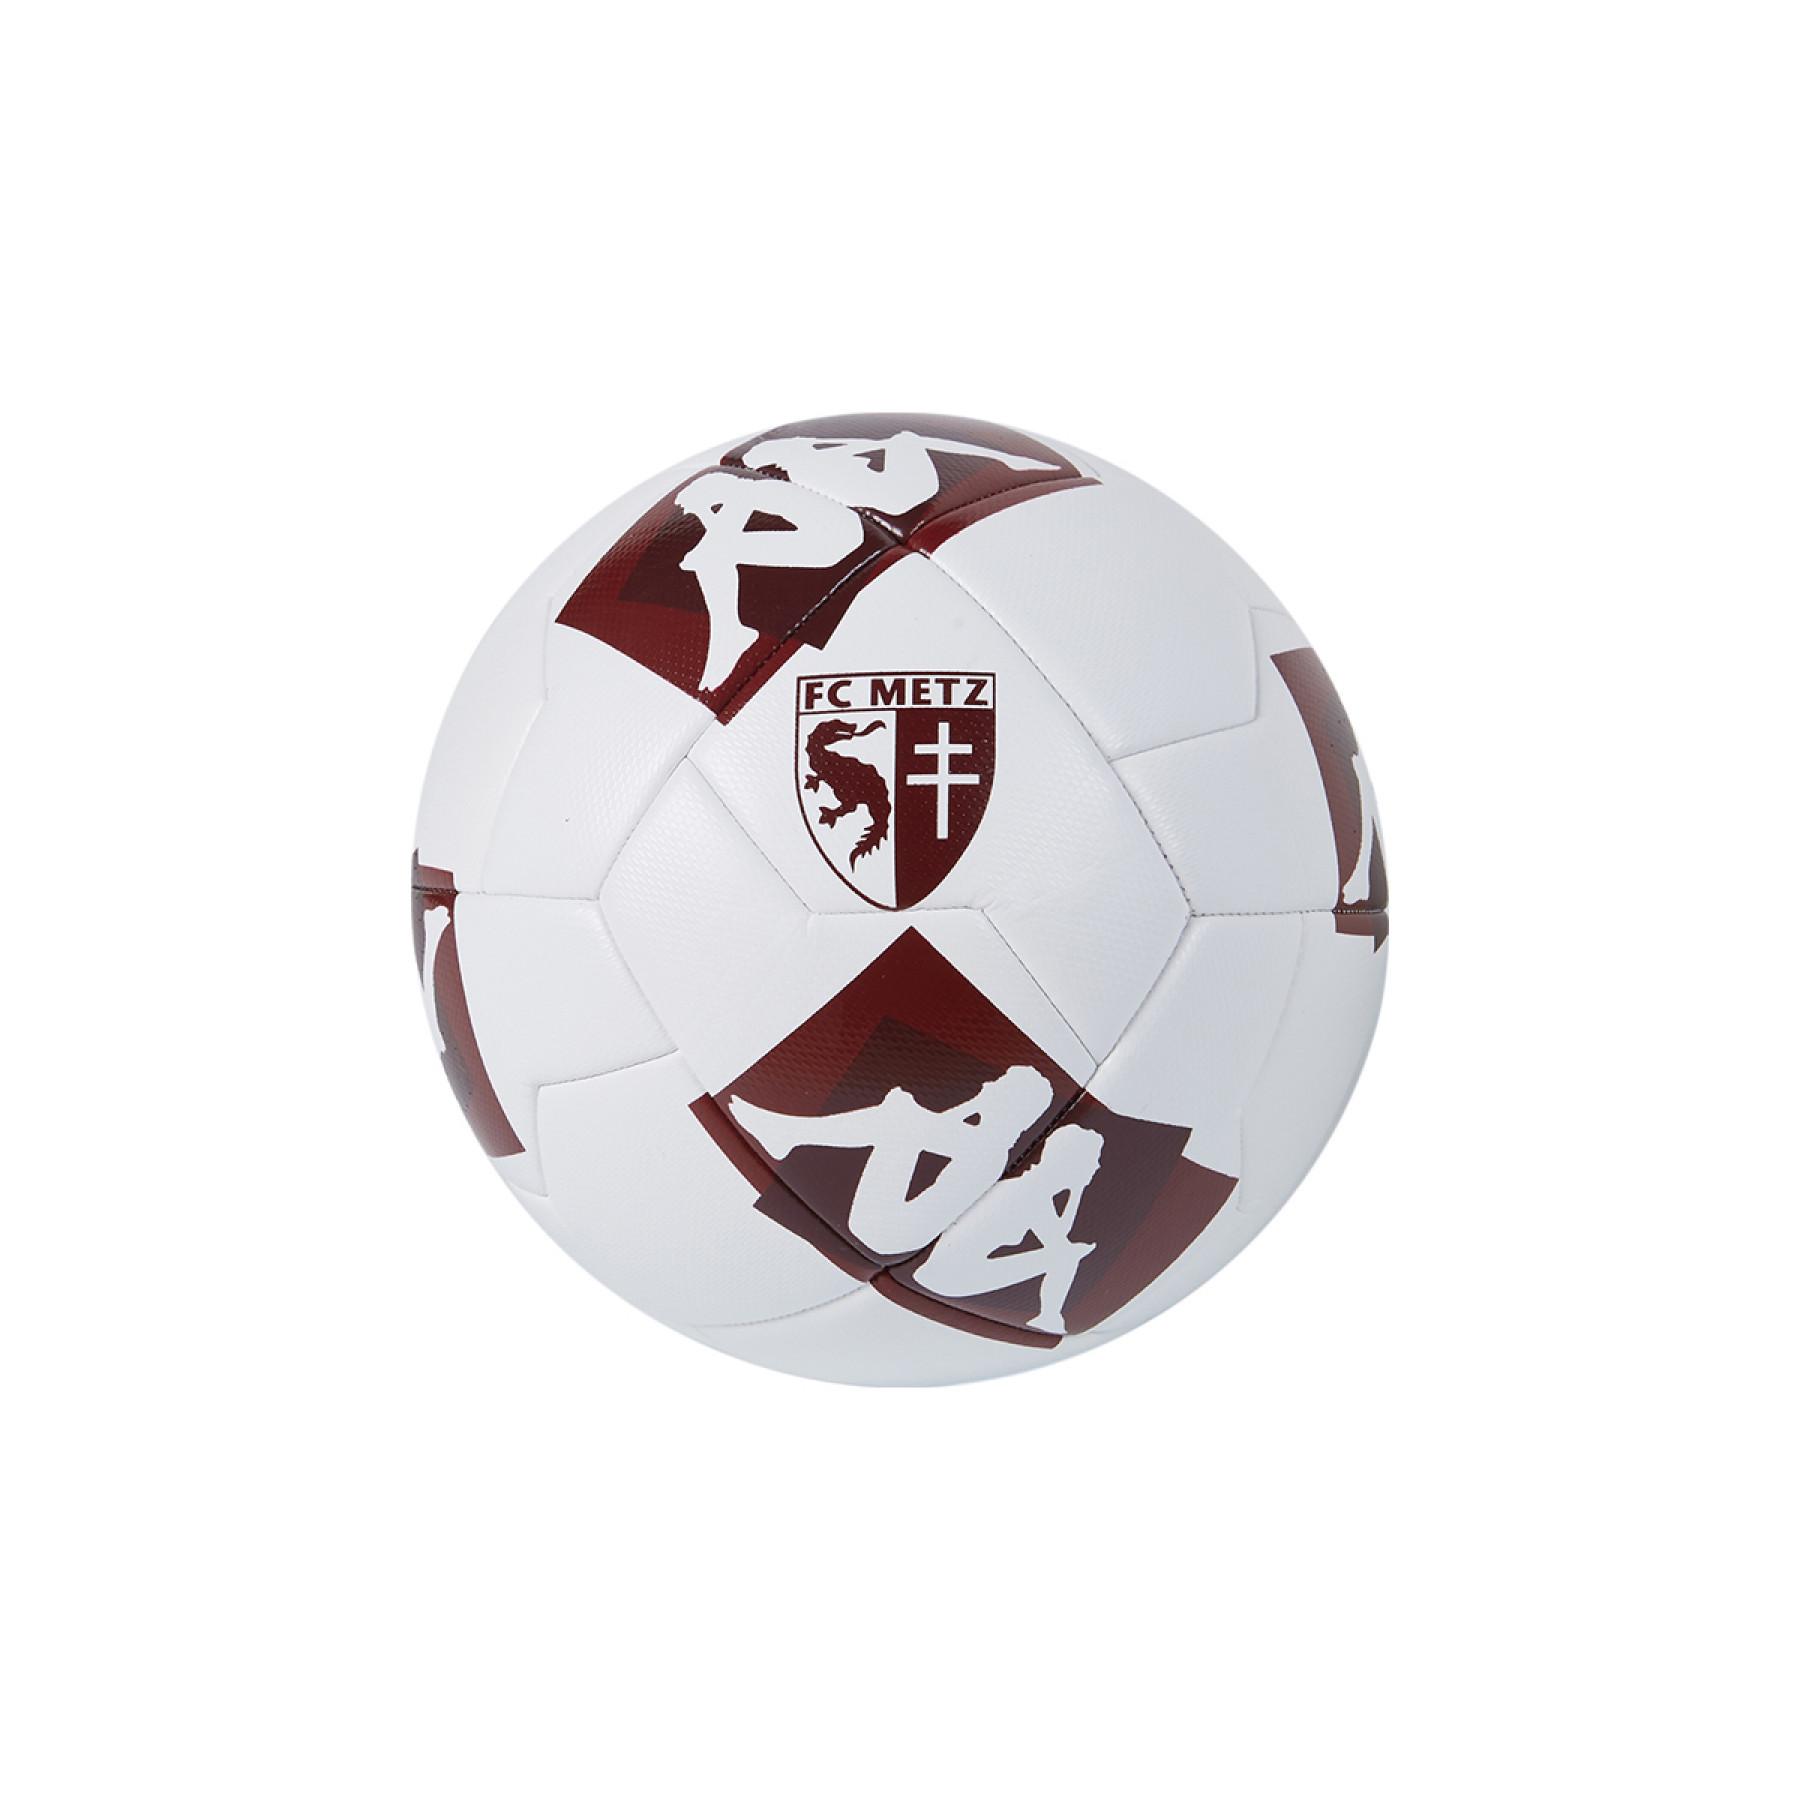 Ballong FC Metz 2020/21 player 20.3g